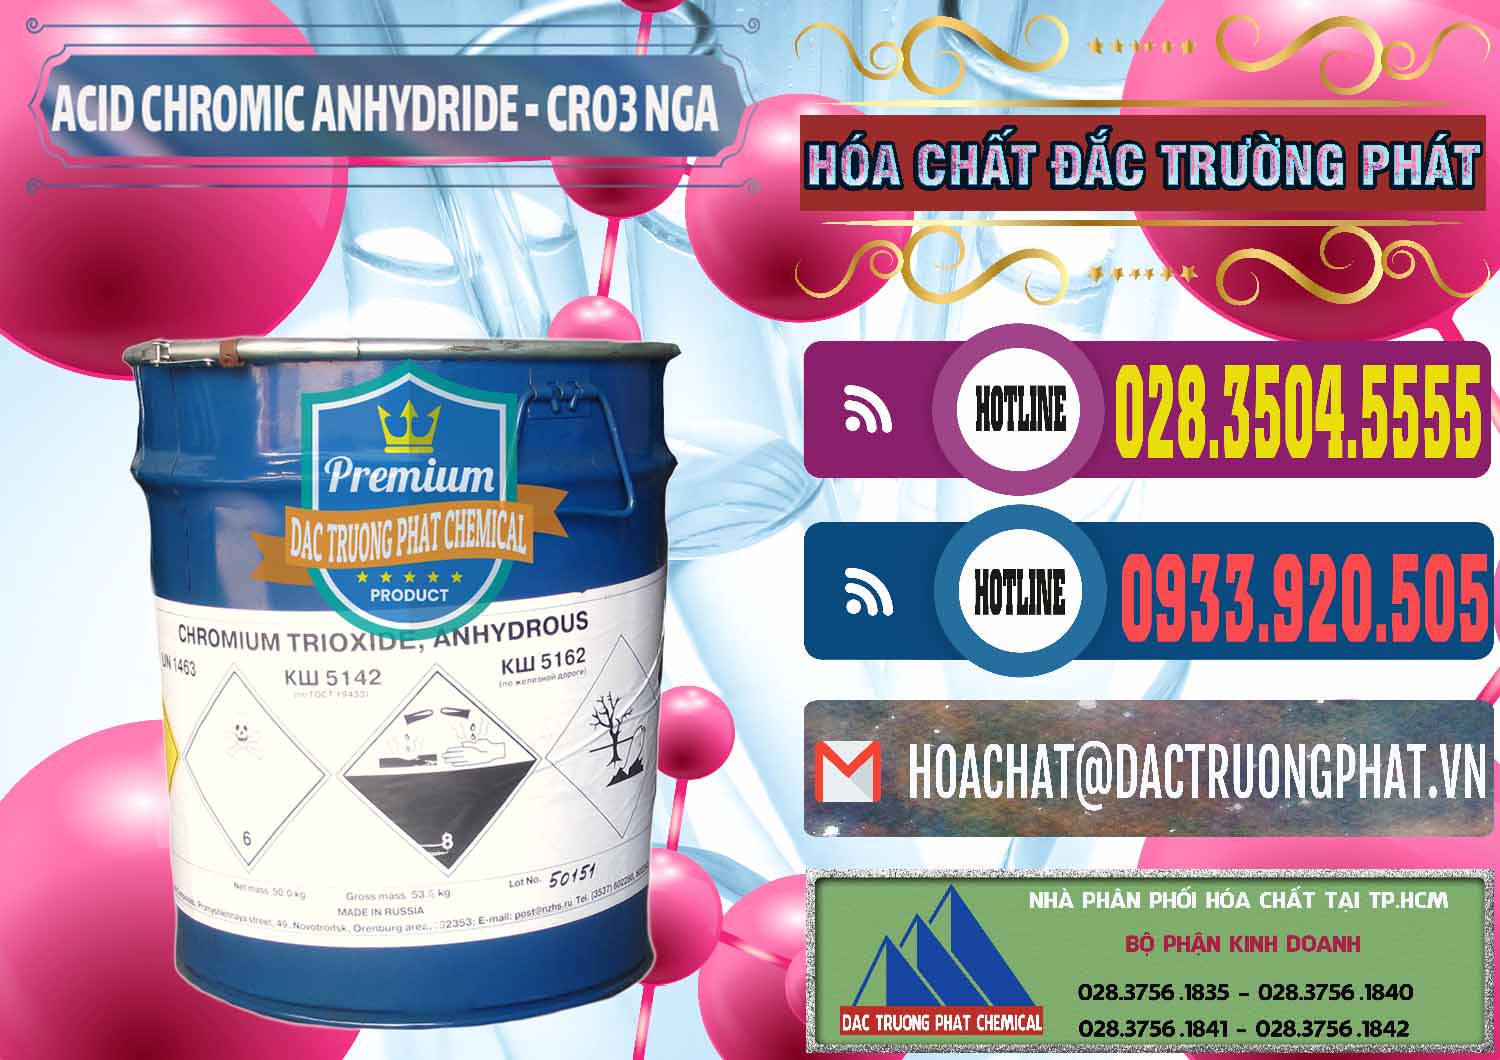 Cty chuyên bán - cung cấp Acid Chromic Anhydride - Cromic CRO3 Nga Russia - 0006 - Nhà cung cấp & nhập khẩu hóa chất tại TP.HCM - muabanhoachat.com.vn